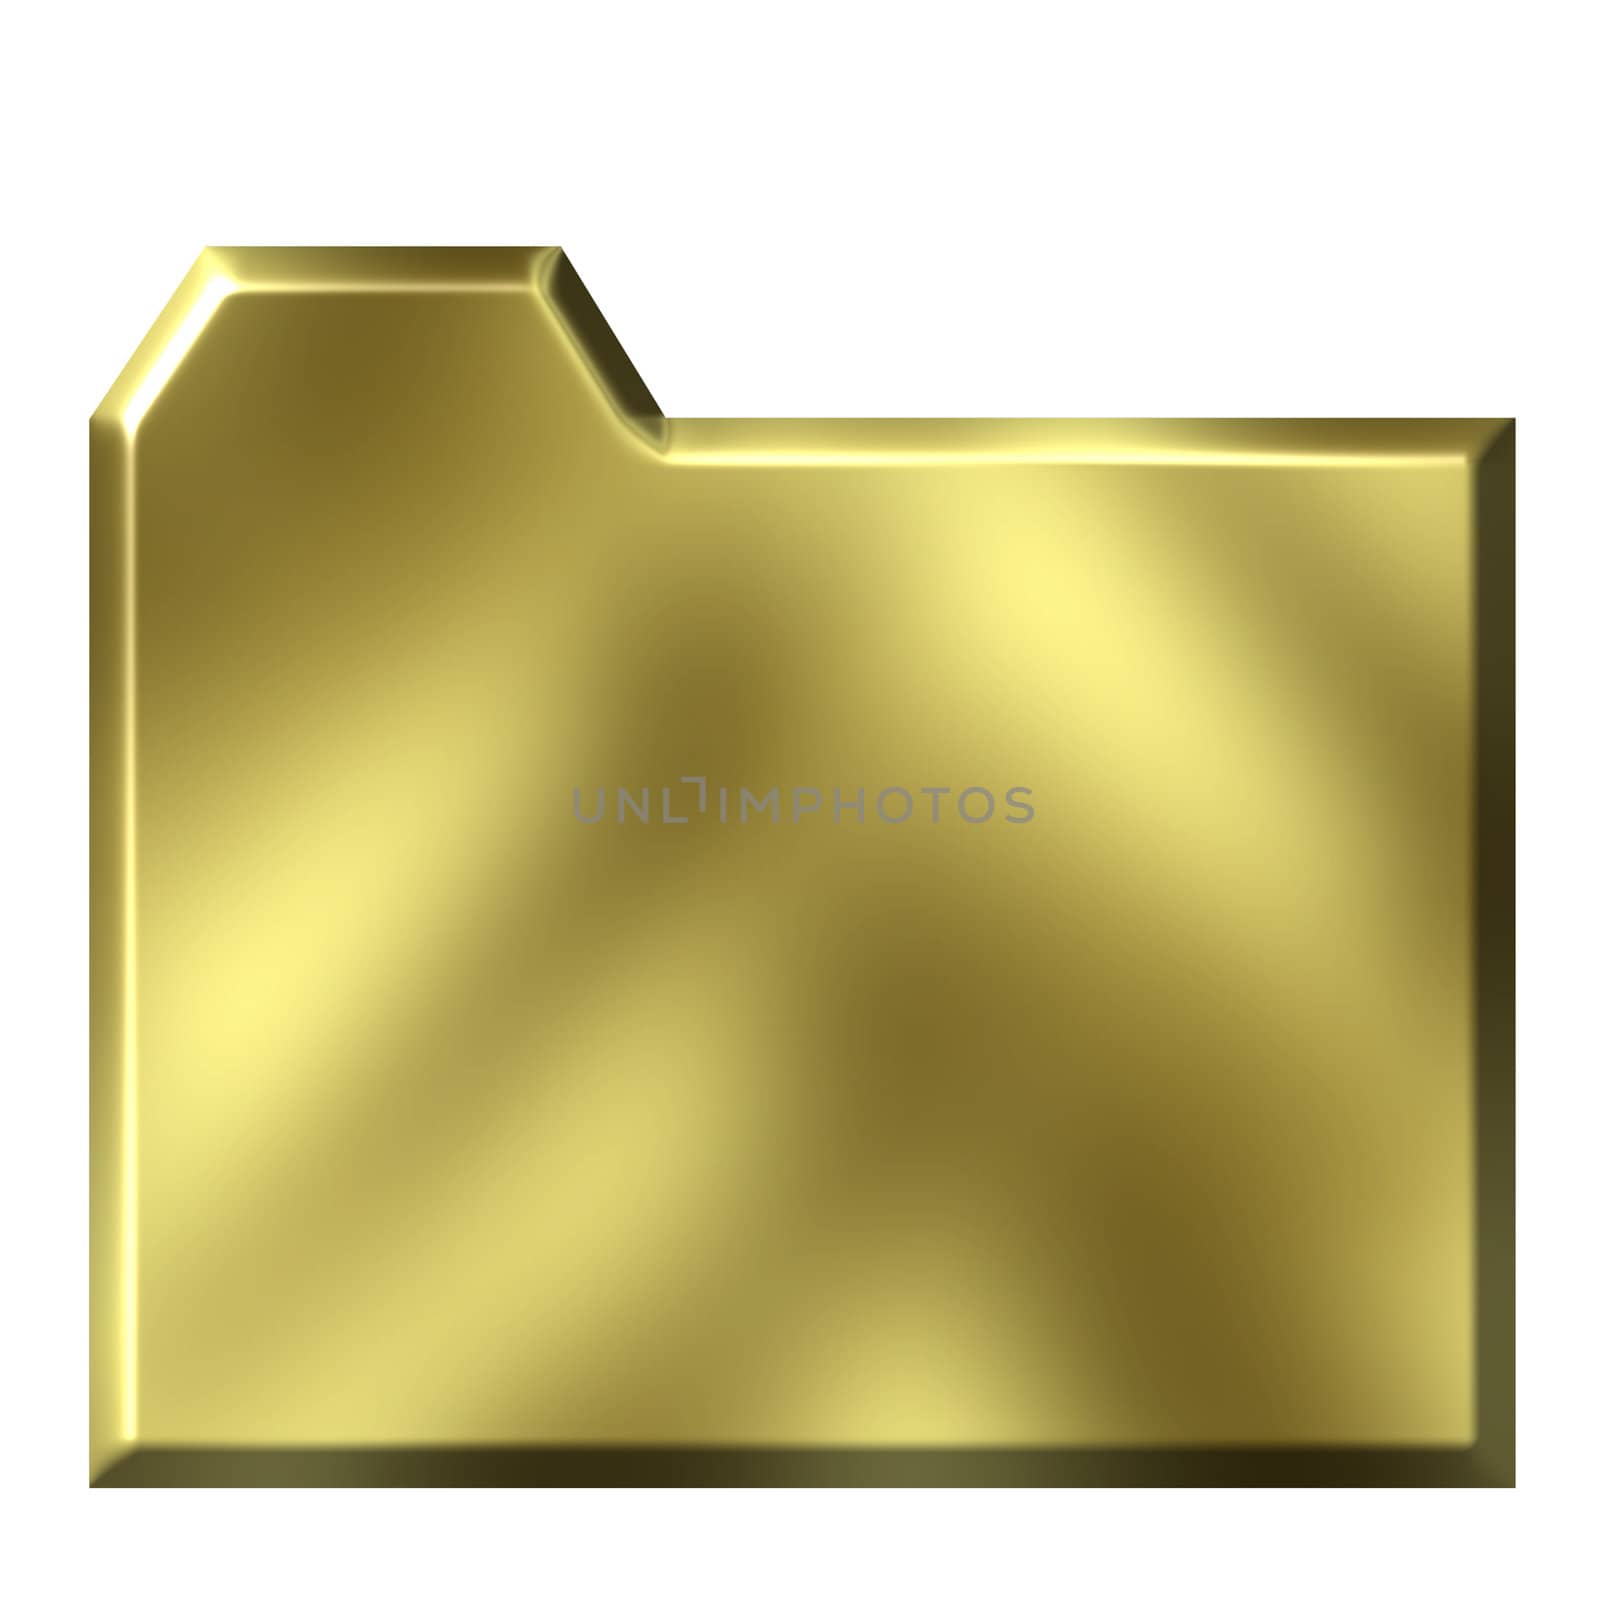 3d golden folder isolated in white